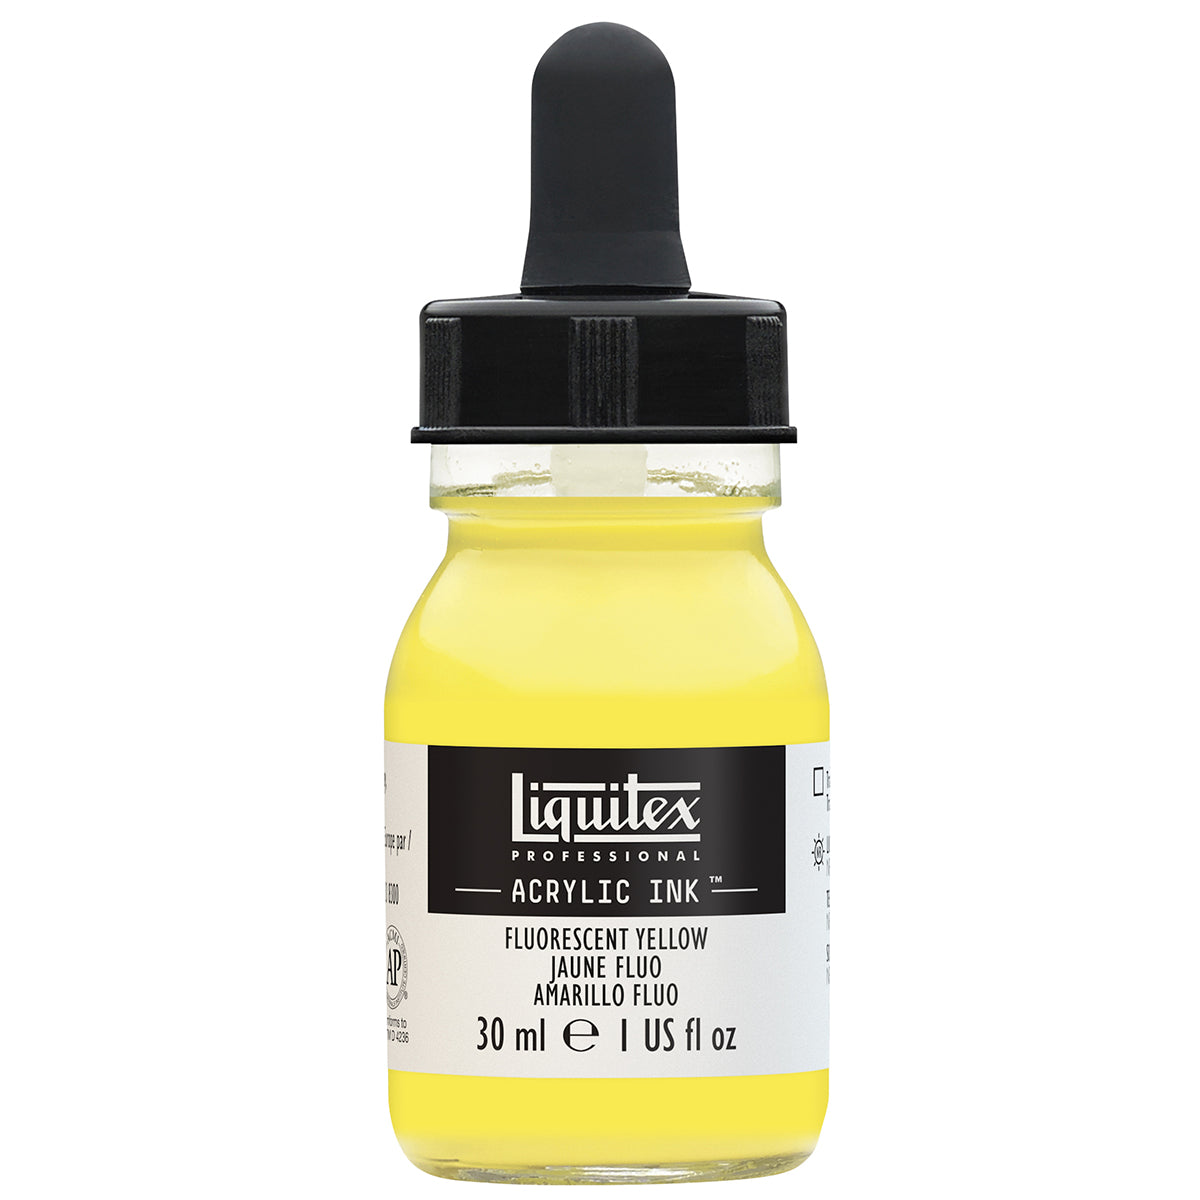 Liquitex-inchiostro acrilico-30ml giallo fluorescente